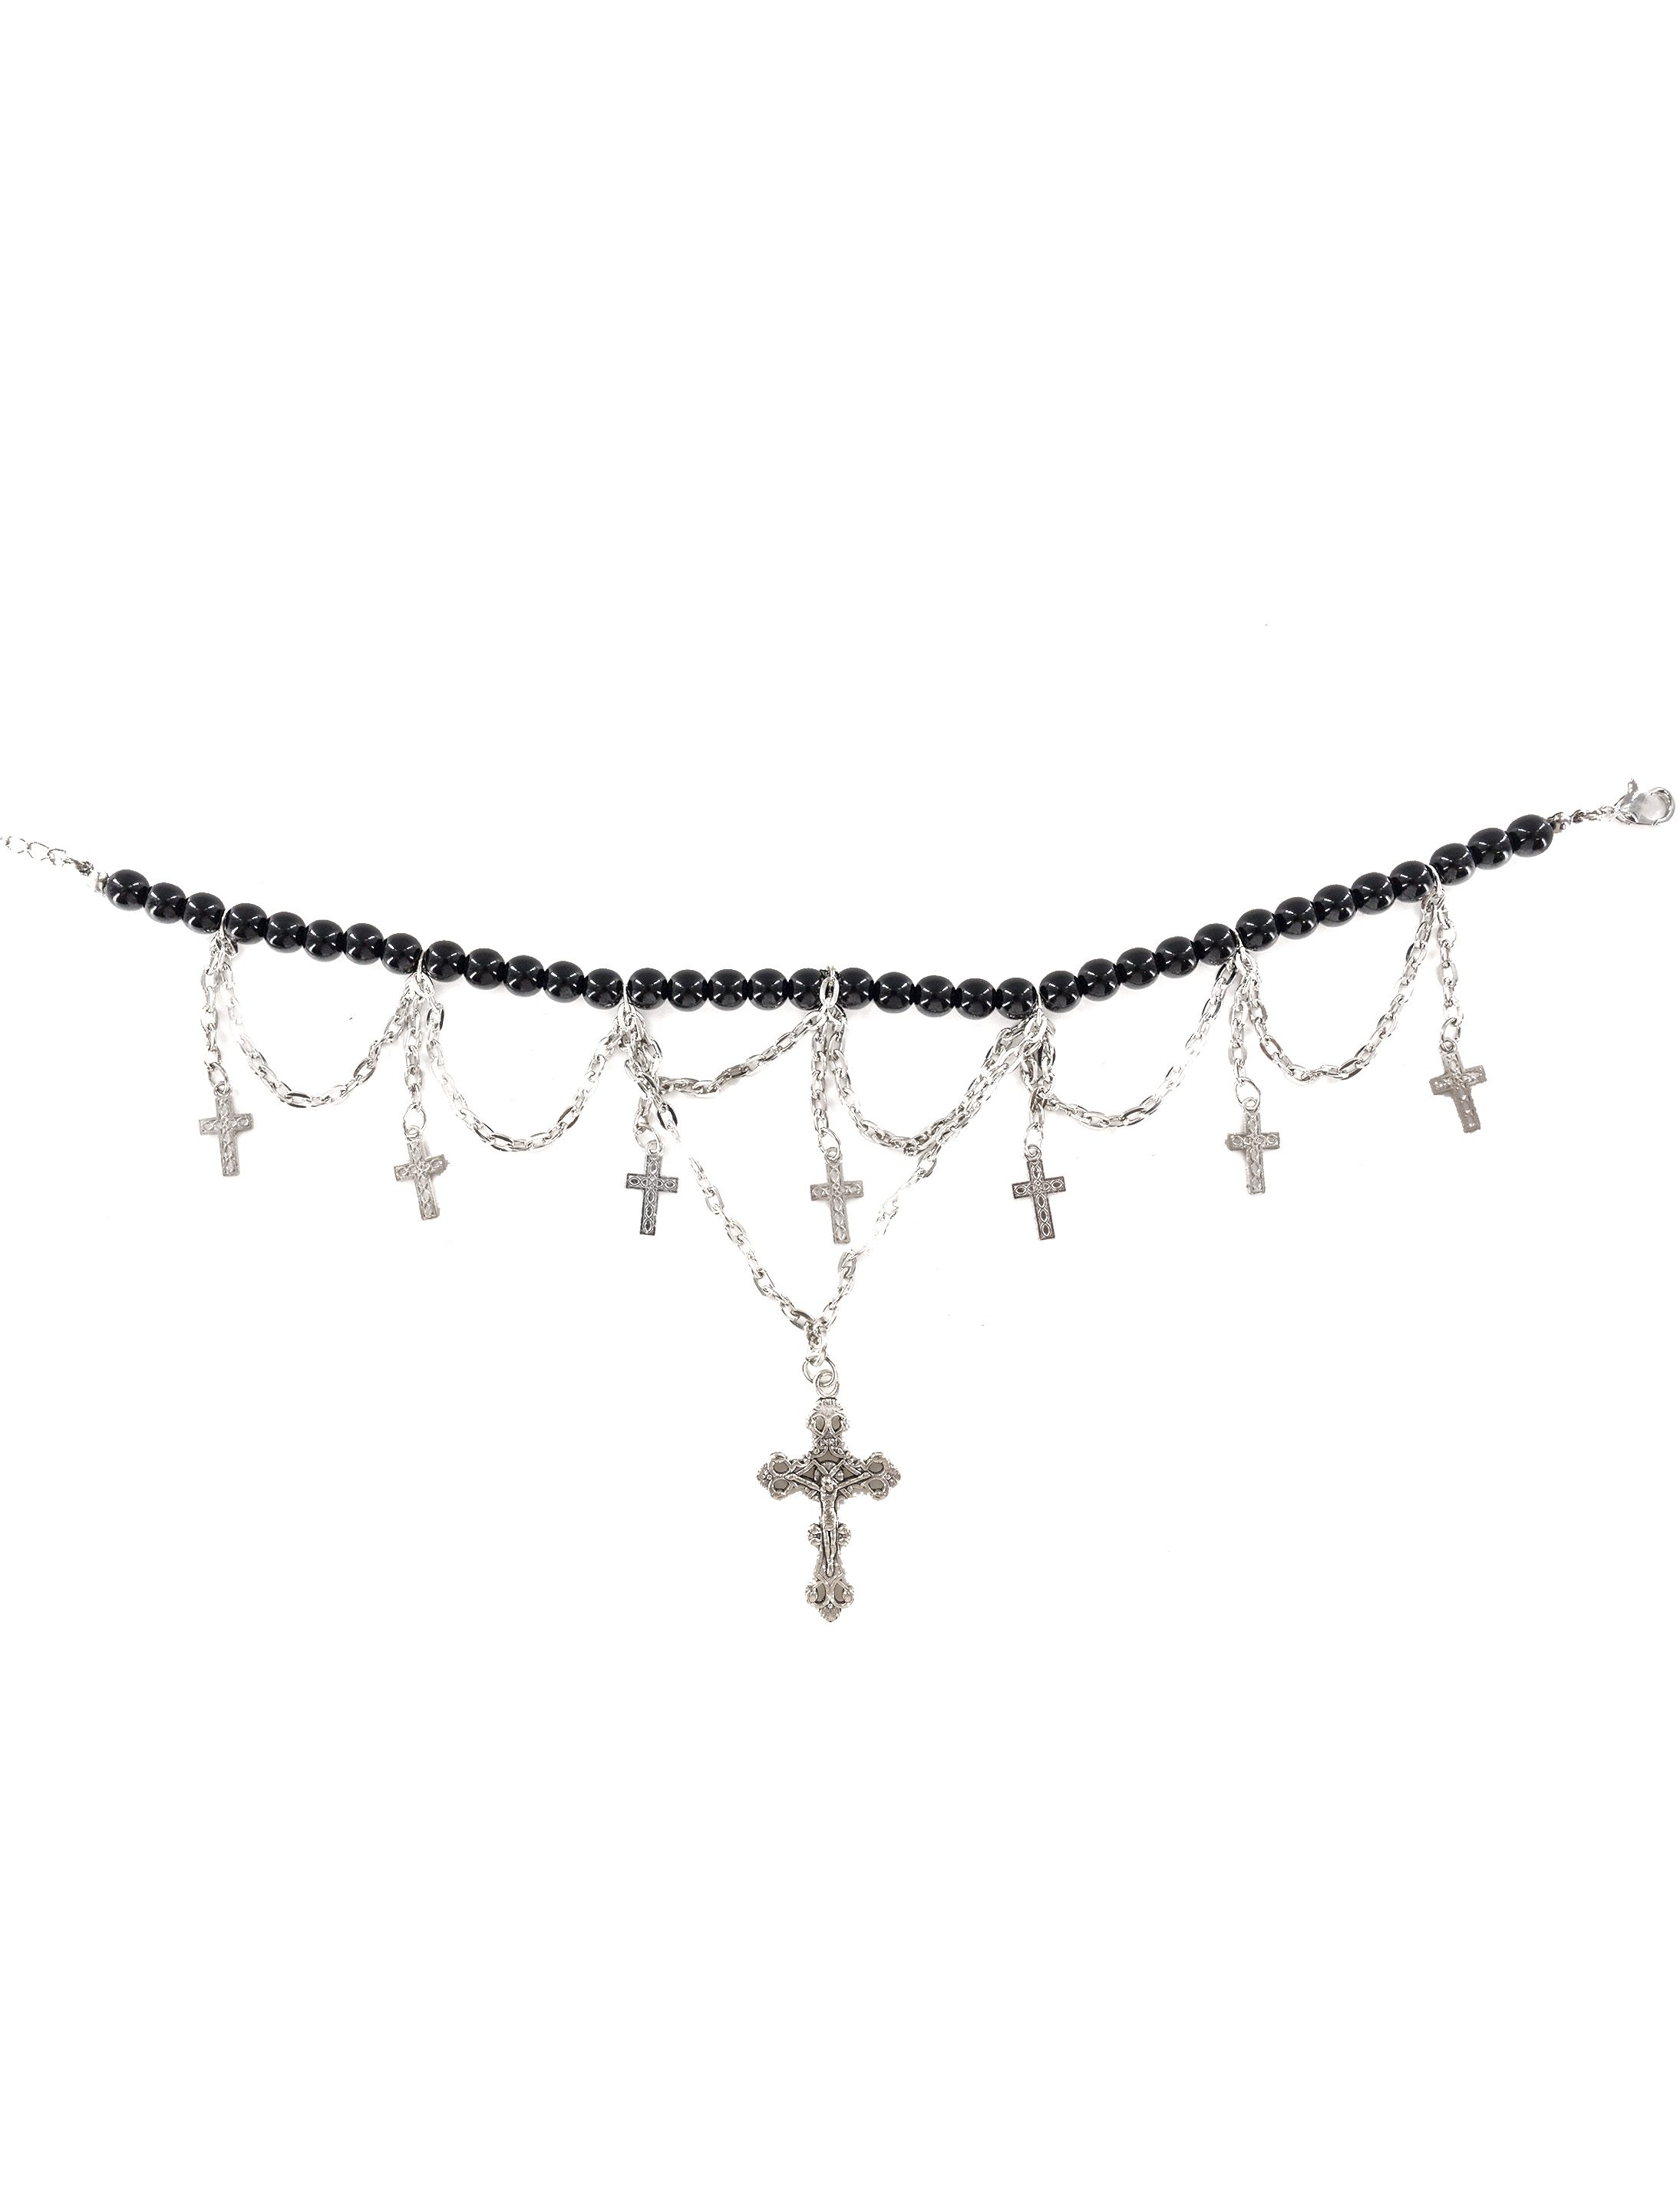 Halsband mit Kreuzen Damen schwarz/silber